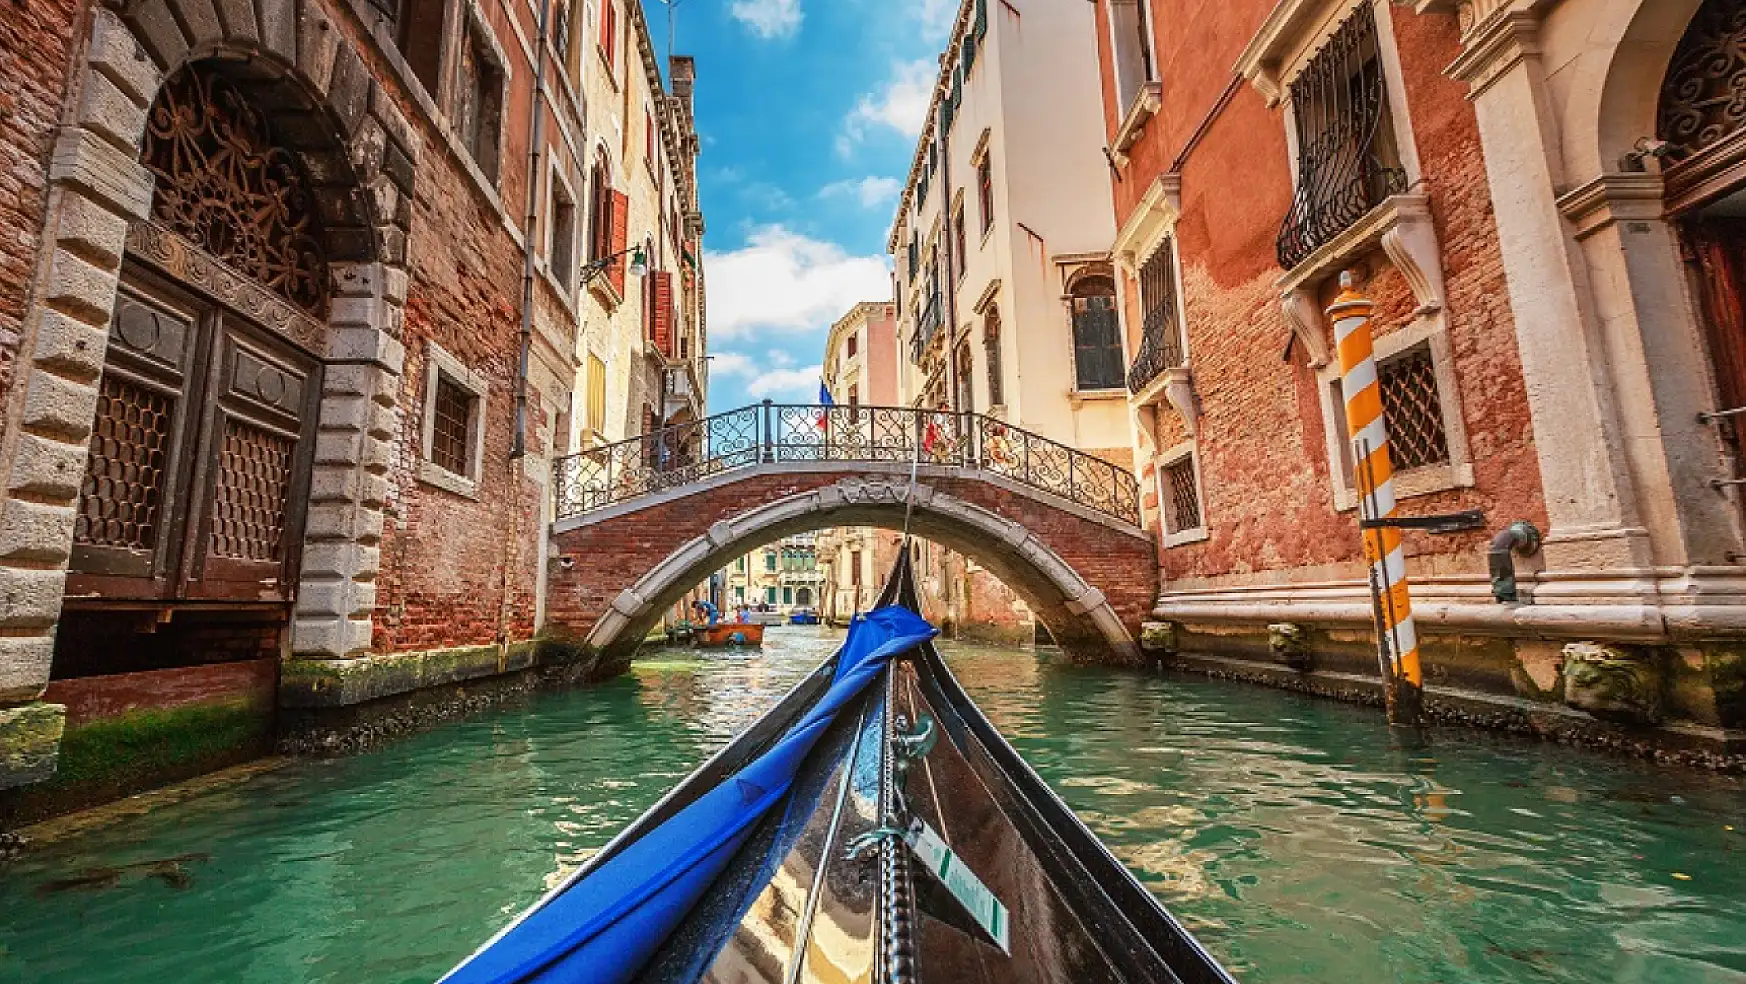 Venedik Kanalları: İtalya'nın tarihi mirası!